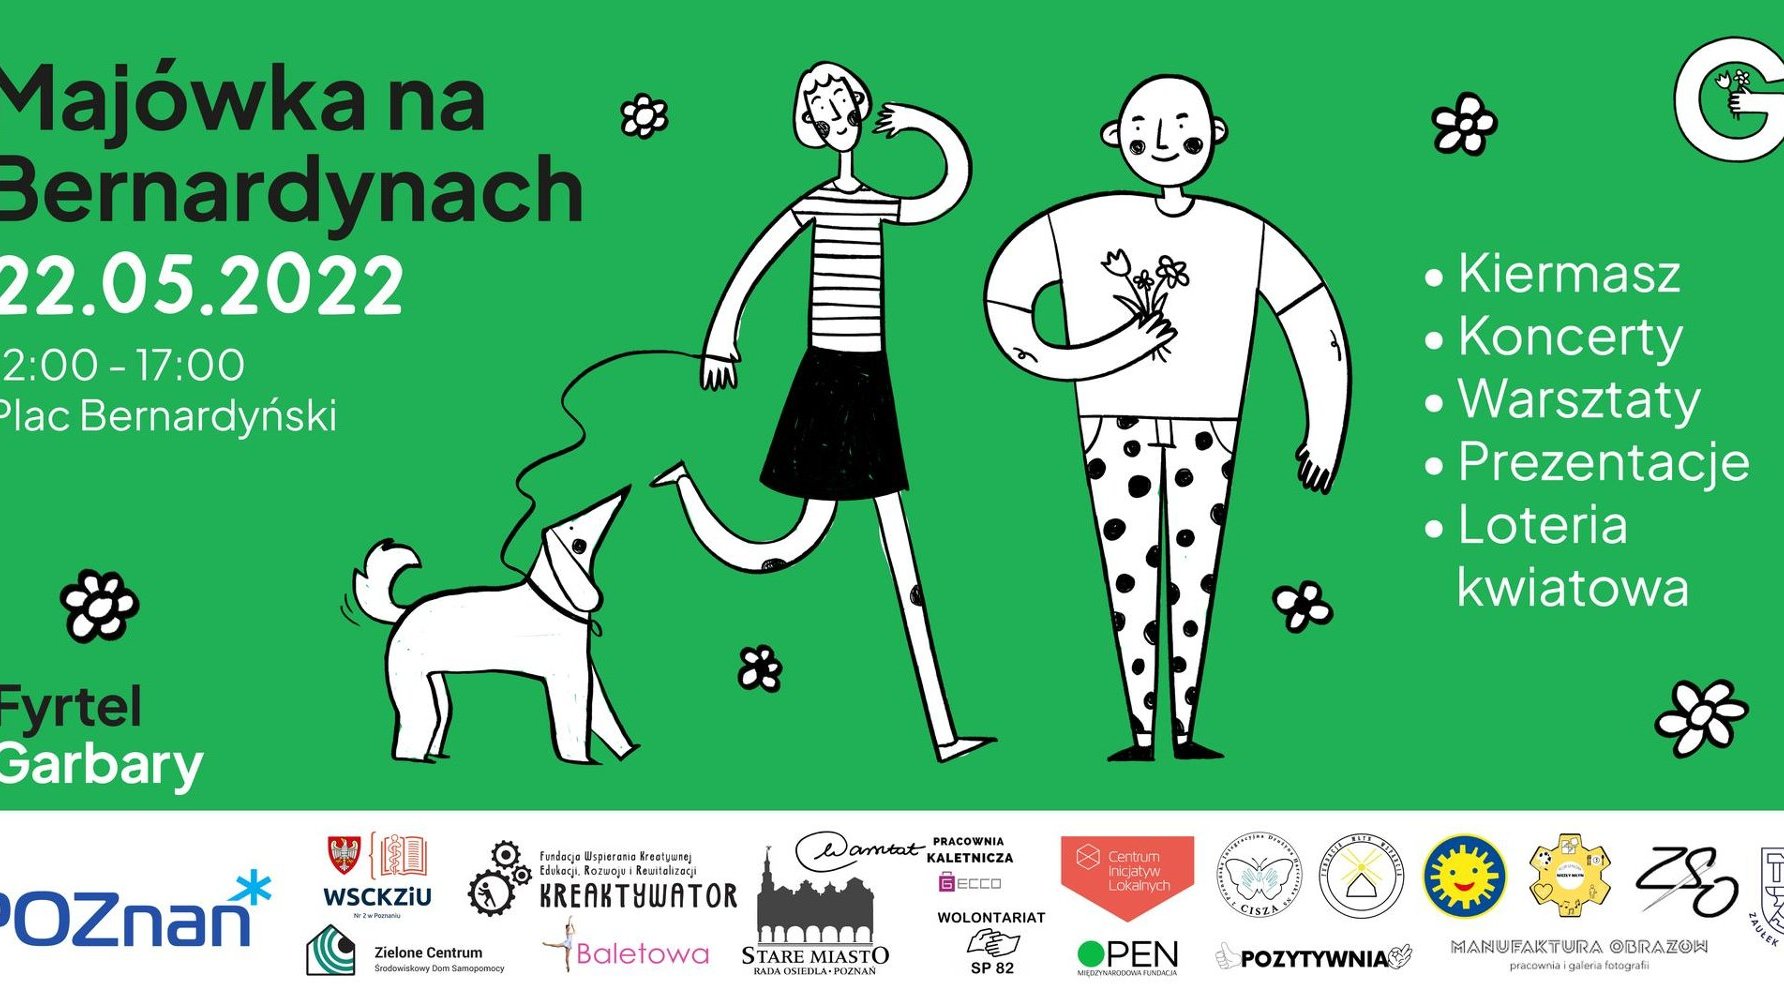 Plakat zapowiadający wydarzenie. Widać na nim rysunek kobiety z psem oraz mężczyzny, a także informacje o wydarzeniu.